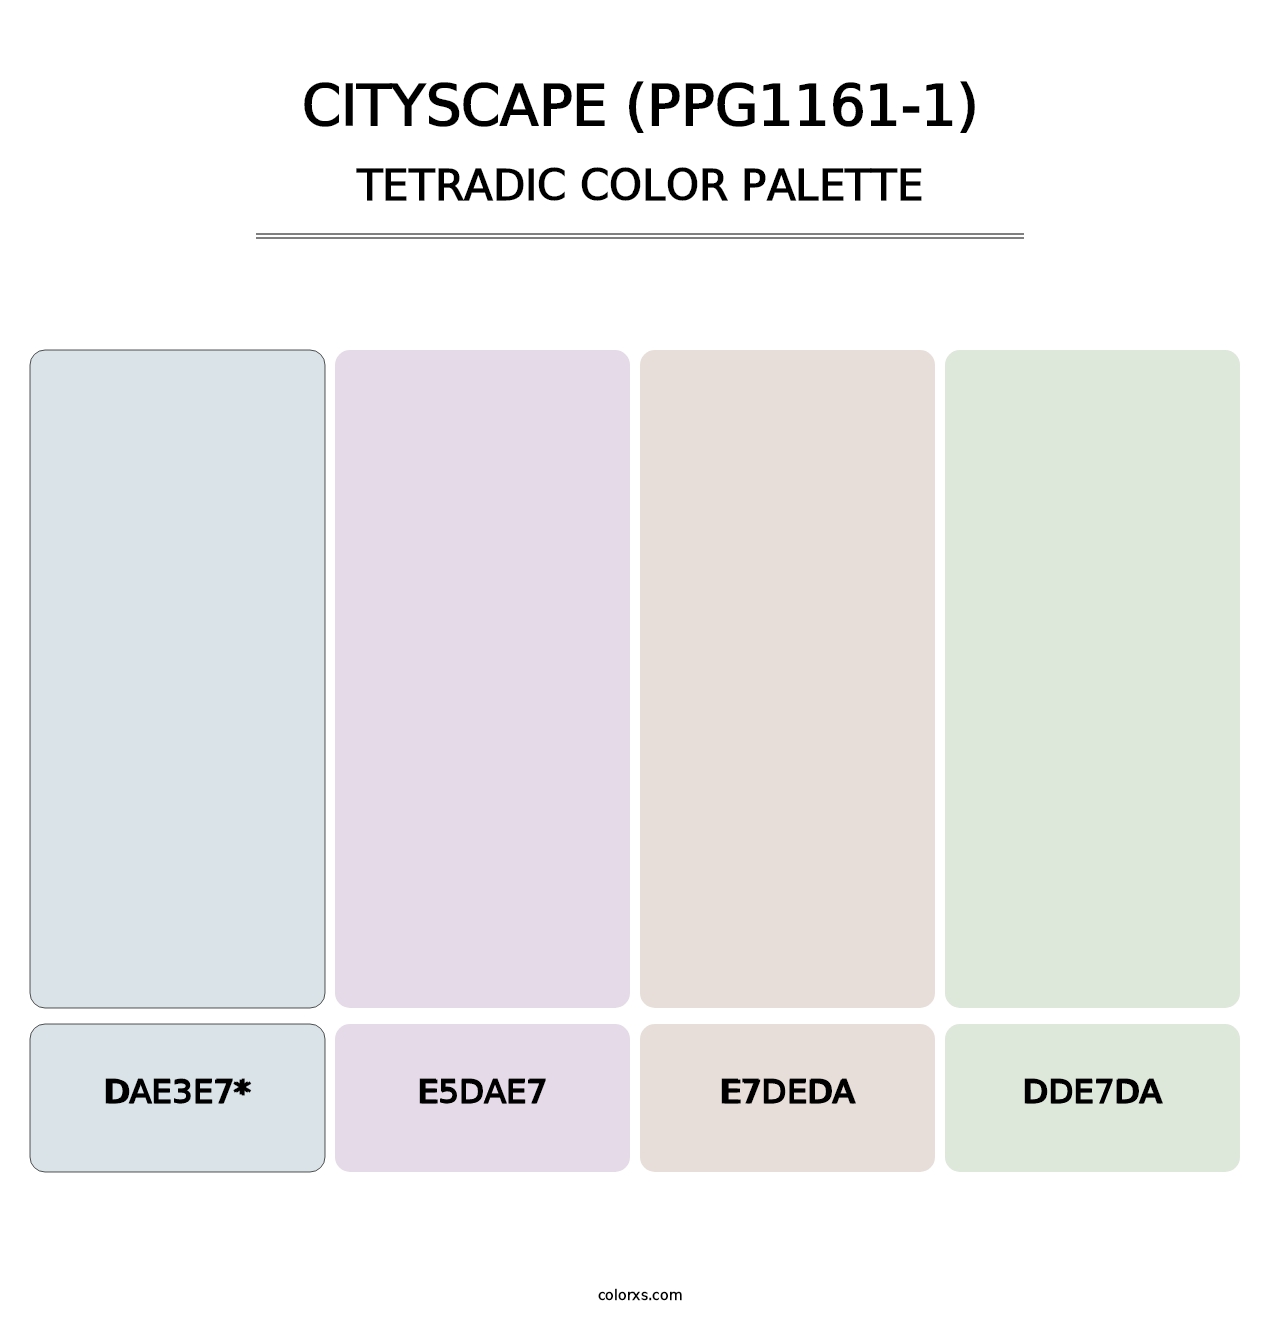 Cityscape (PPG1161-1) - Tetradic Color Palette